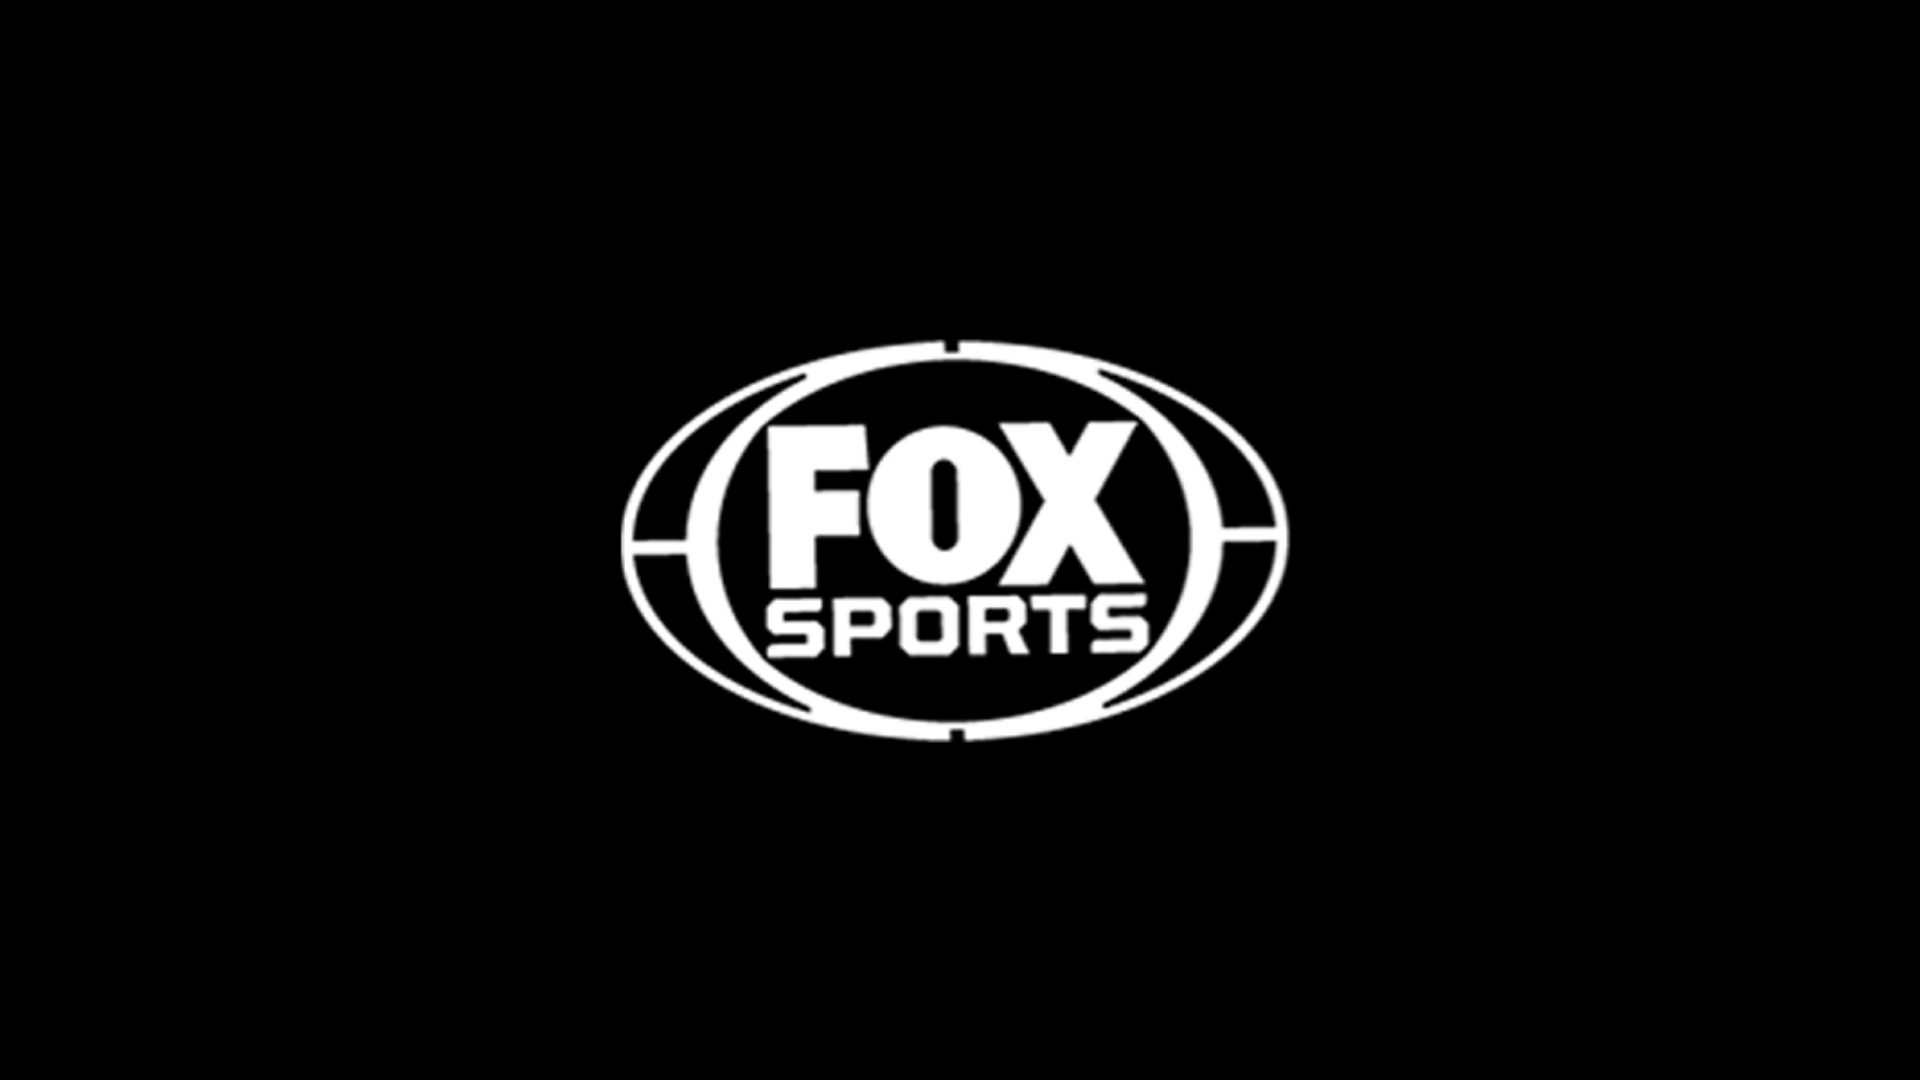 Fox Sports ao vivo,Fox Sports online,assistir Fox Sports,assistir Fox Sports ao vivo,assistir Fox Sports online,Fox Sports gratis,assistir Fox Sports gratis,ao vivo online,ao vivo gratis,ver Fox Sports,ver Fox Sports ao vivo,ver Fox Sports online,24 horas,24h,multicanais,piratetv,piratatvs.com